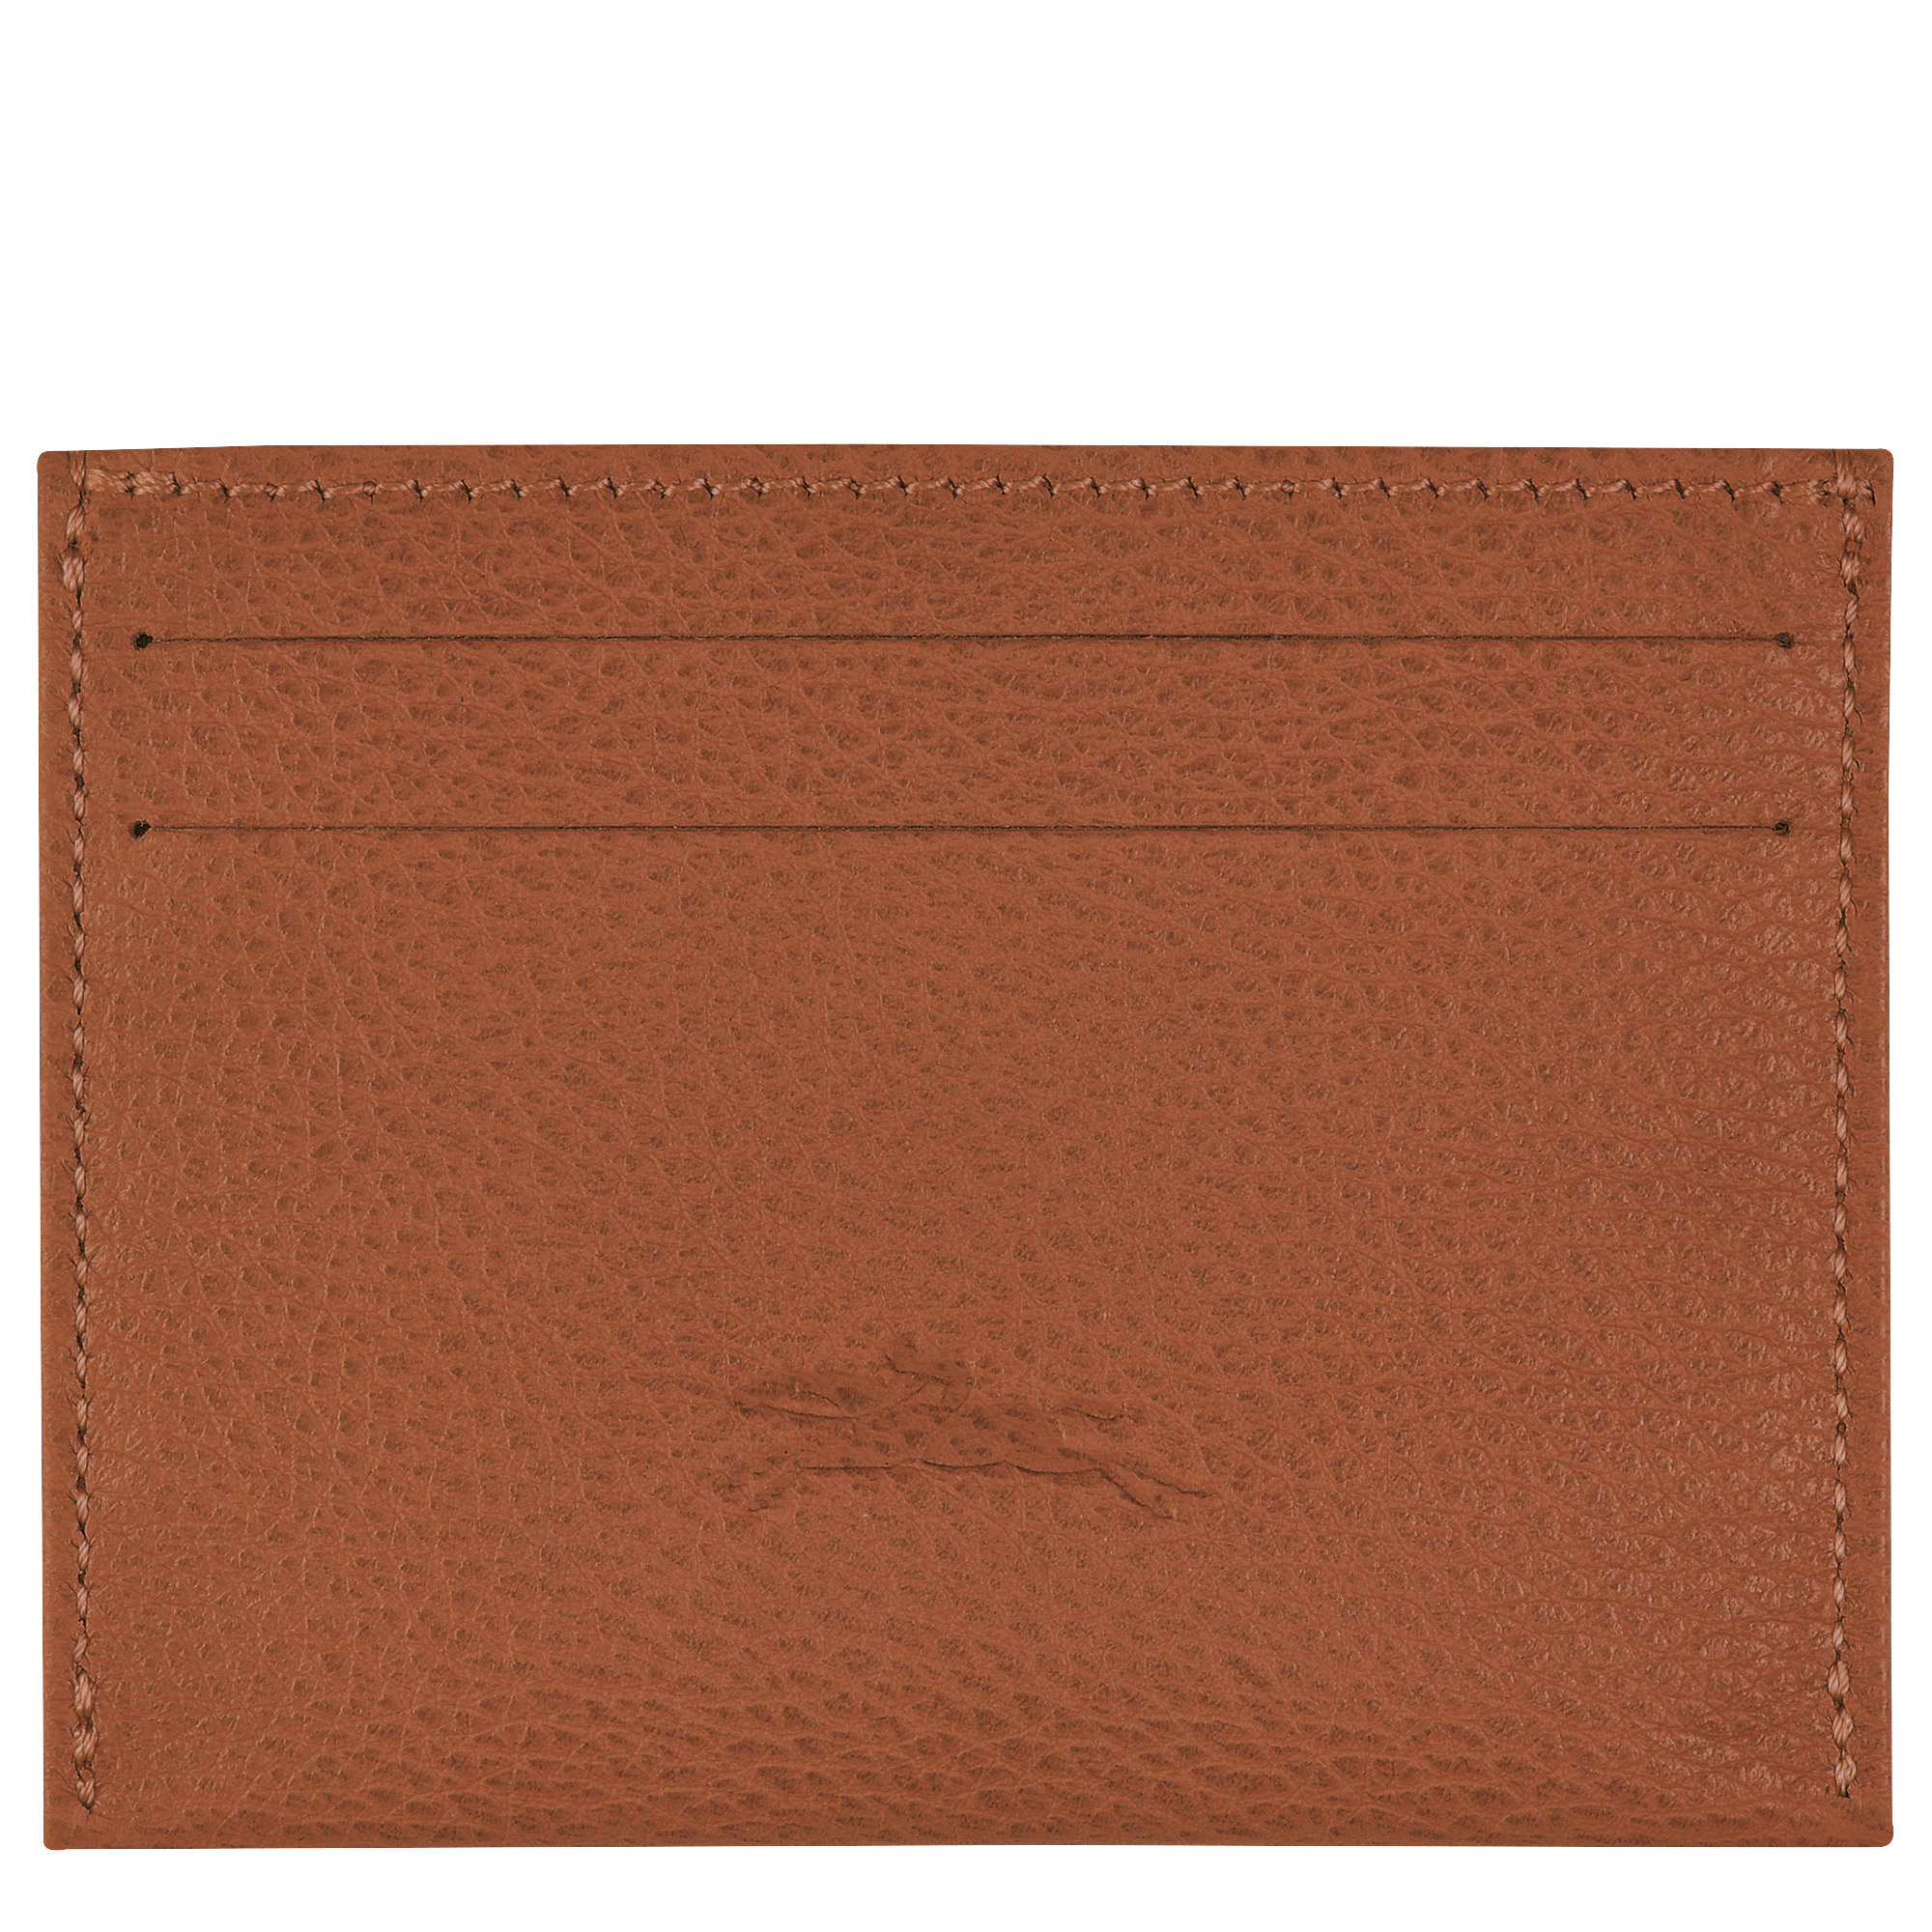 Le Foulonné Cardholder Caramel - Leather - 2